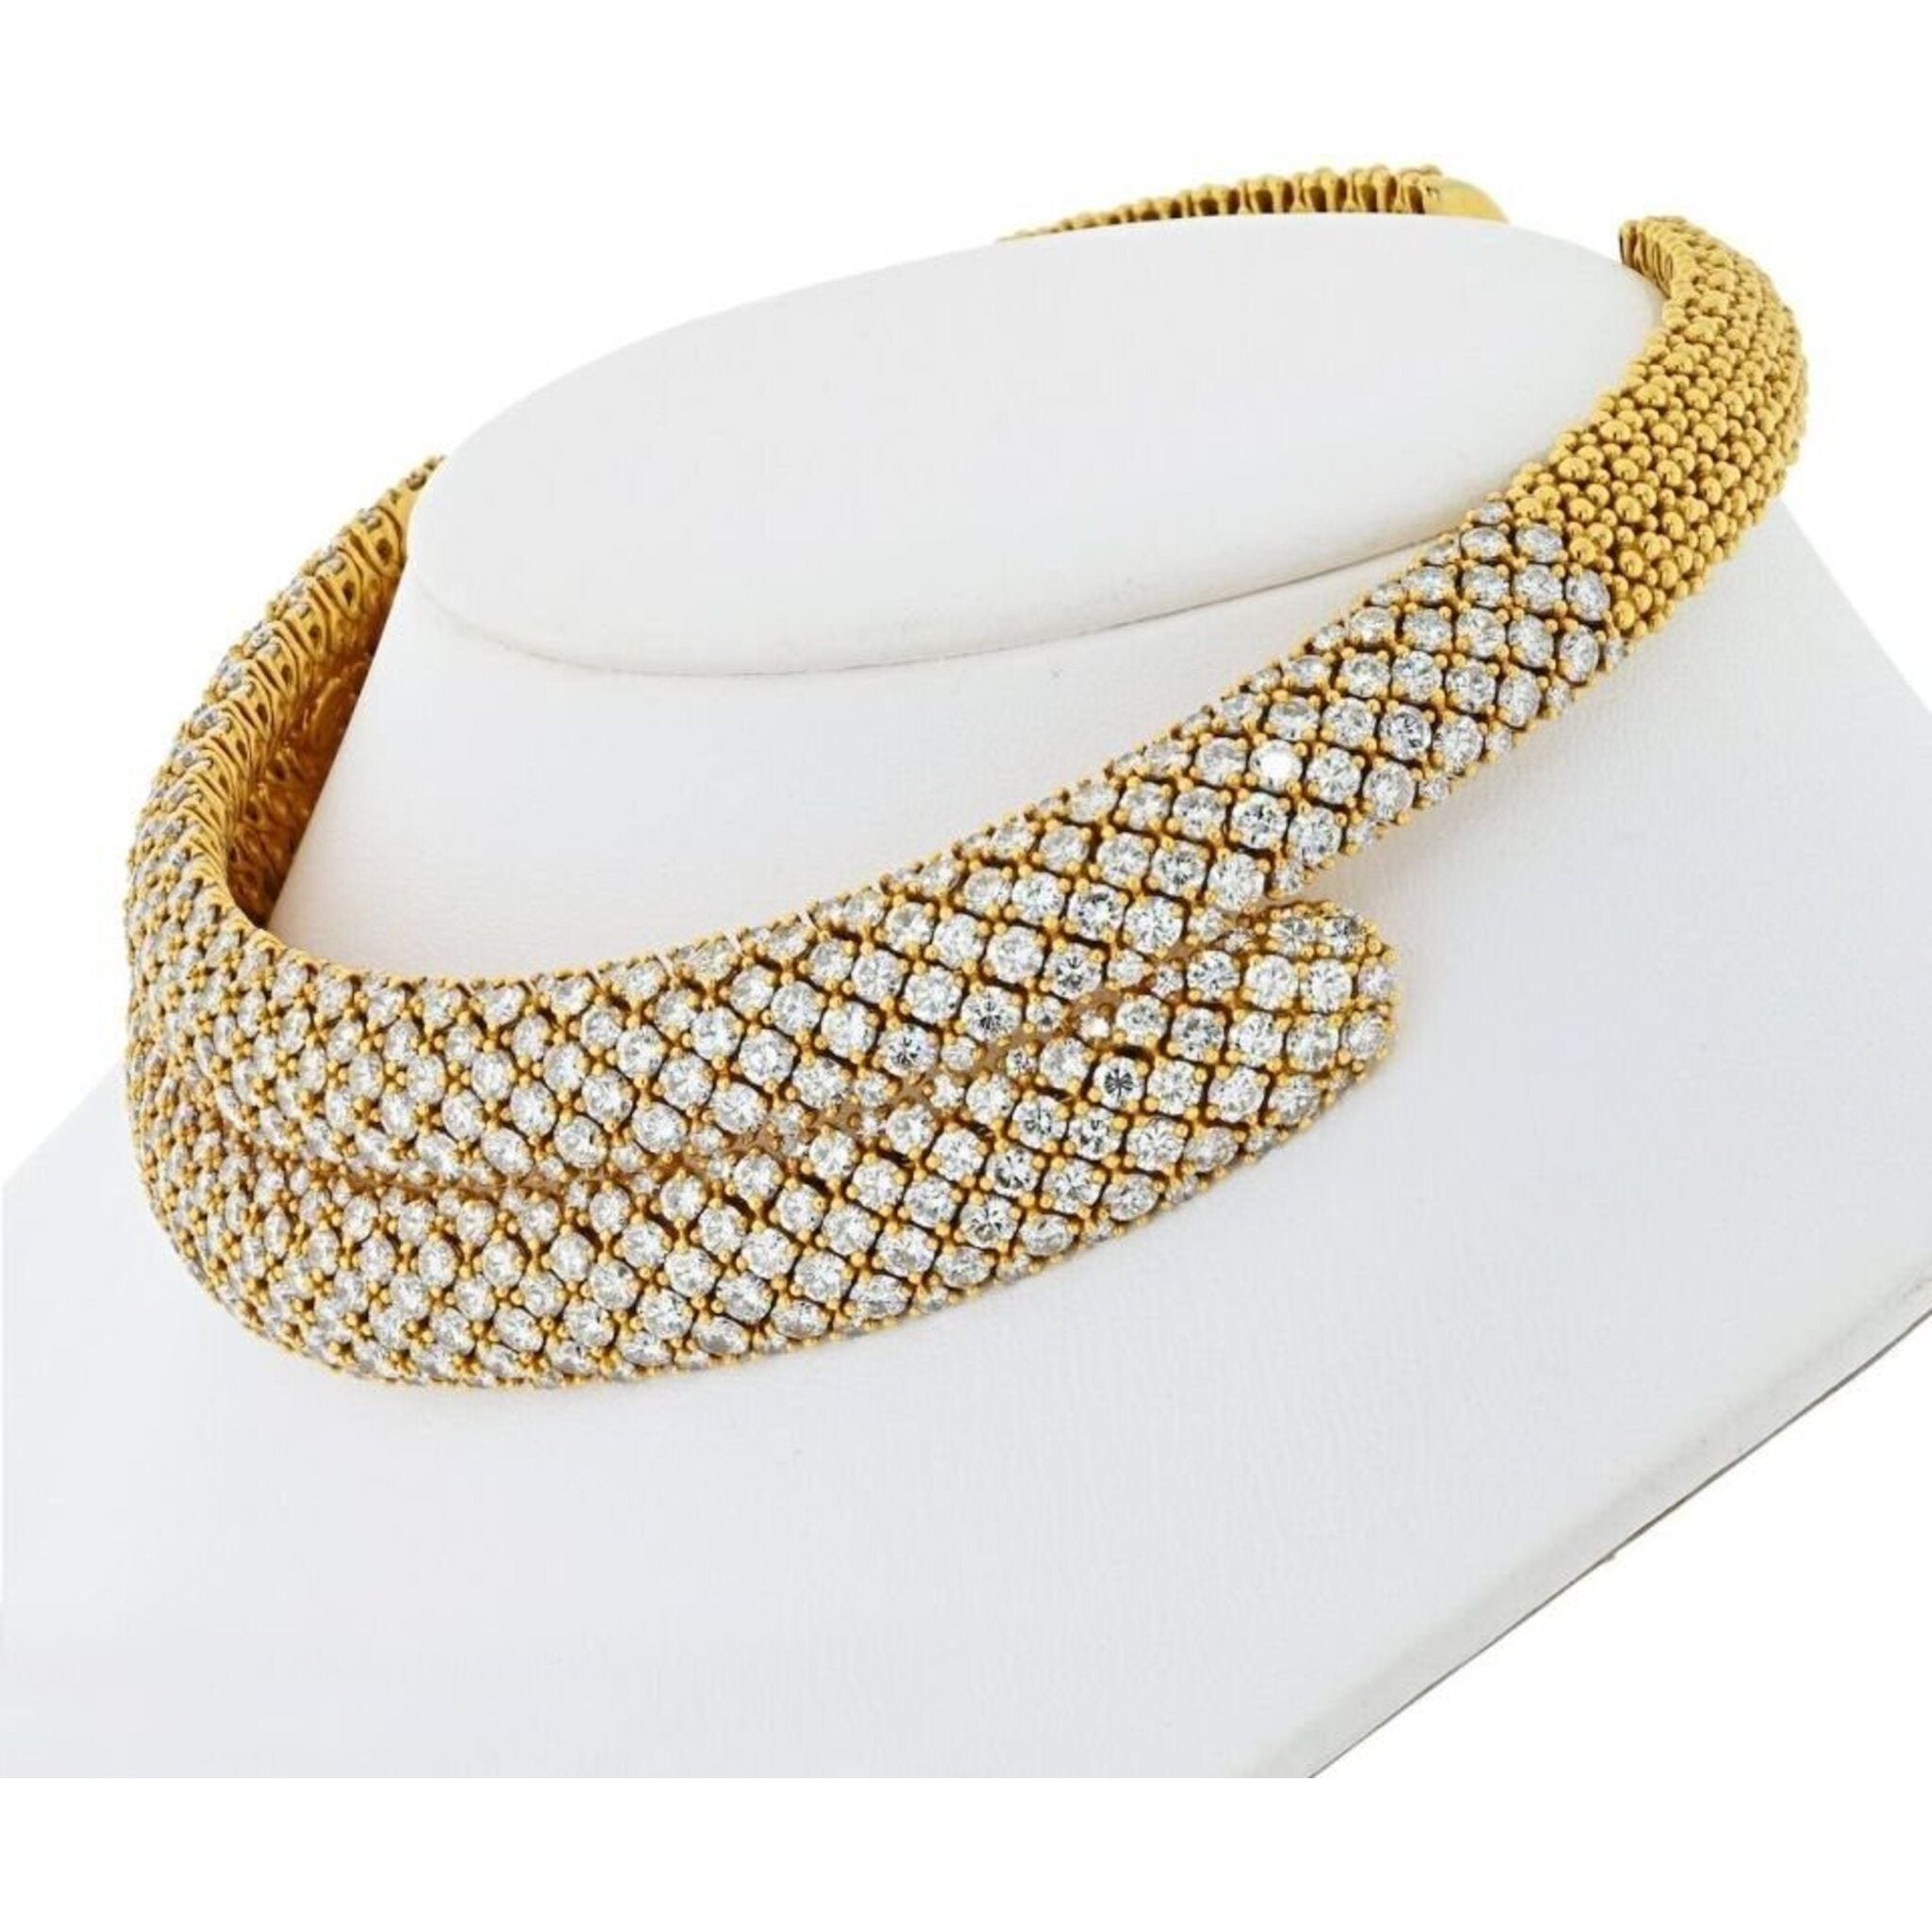 Custom Made HERMES Diamond Alchimie 18k Rose Gold Bracelet